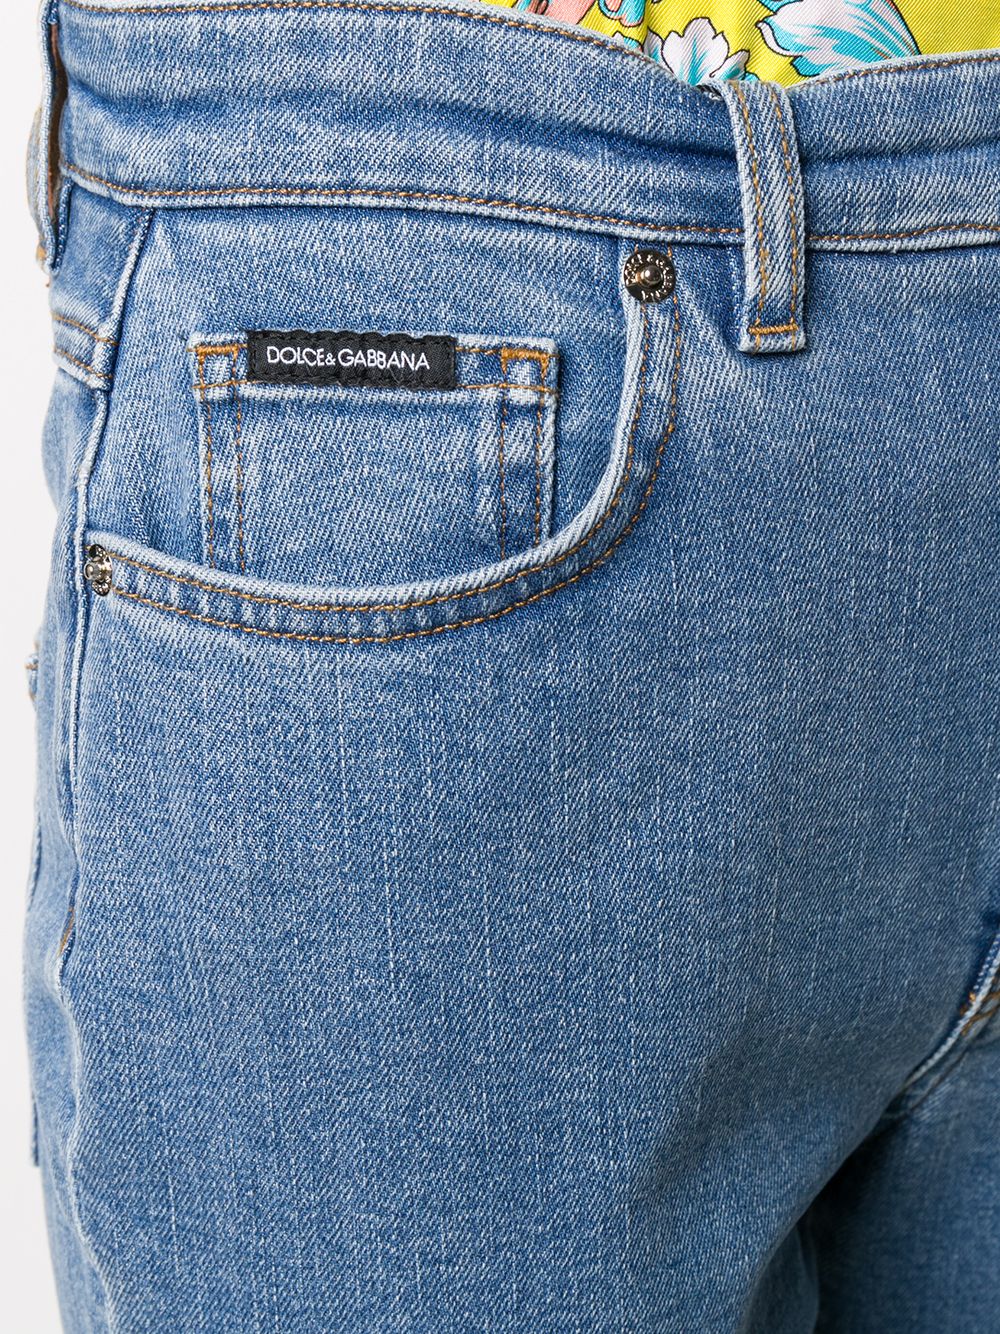 фото Dolce & gabbana прямые джинсы